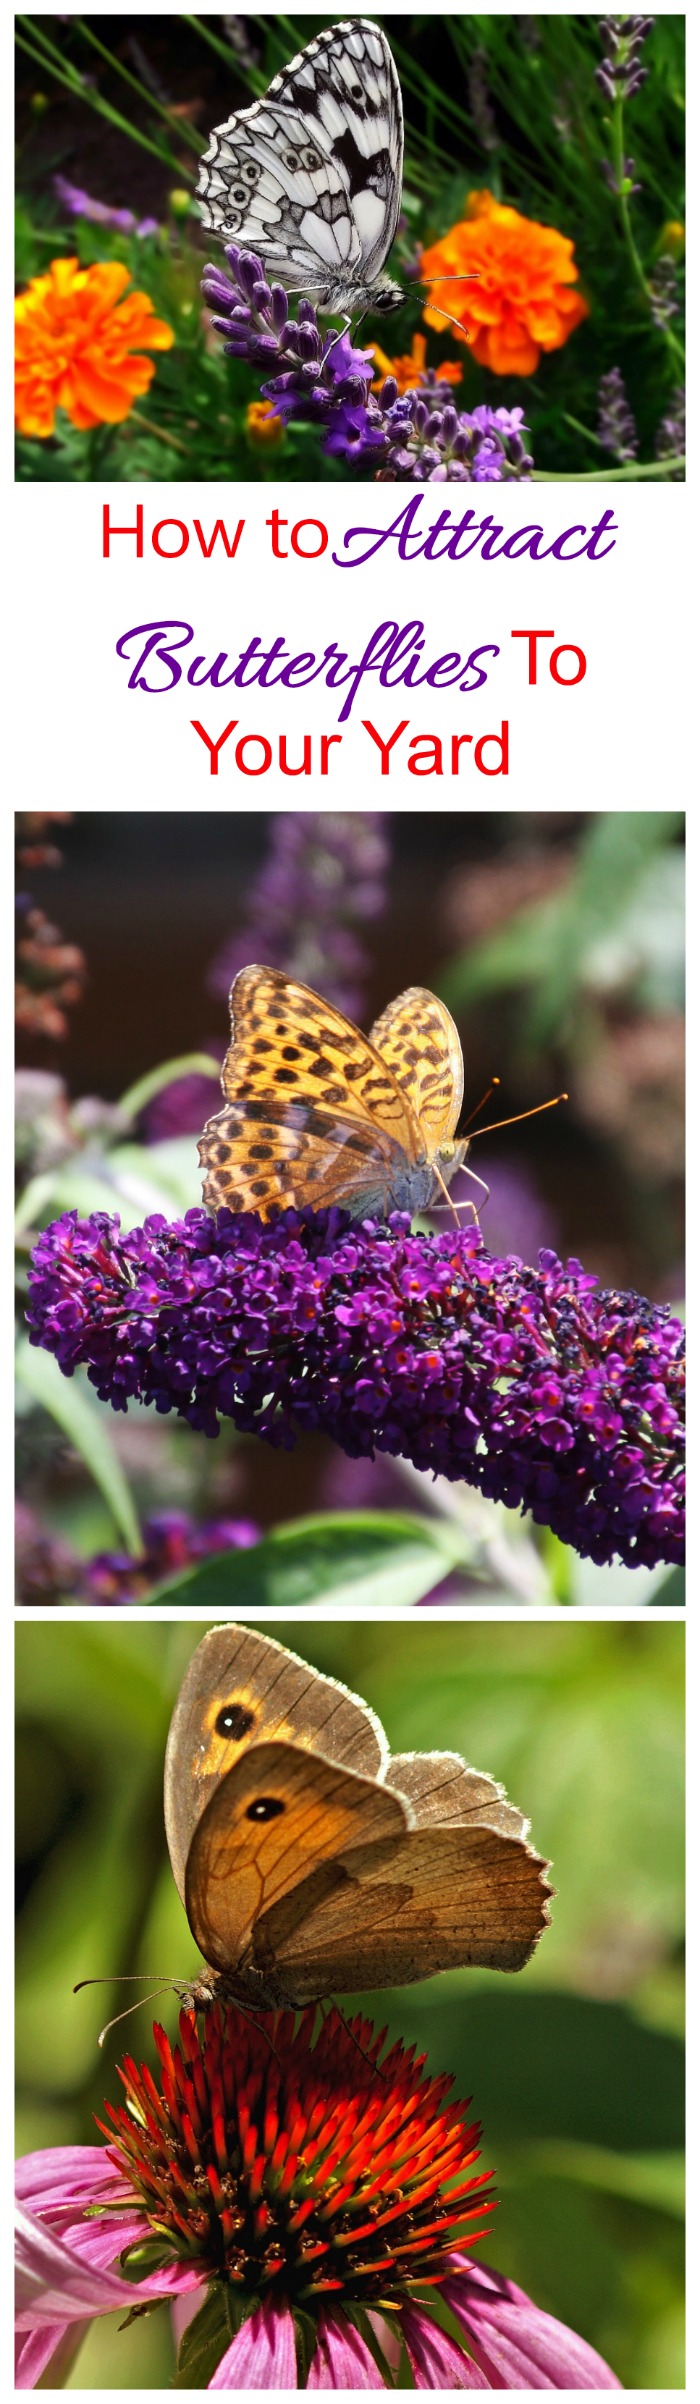 Vlinders aantrekken - Tips om als een magneet vlinders naar je tuin te lokken